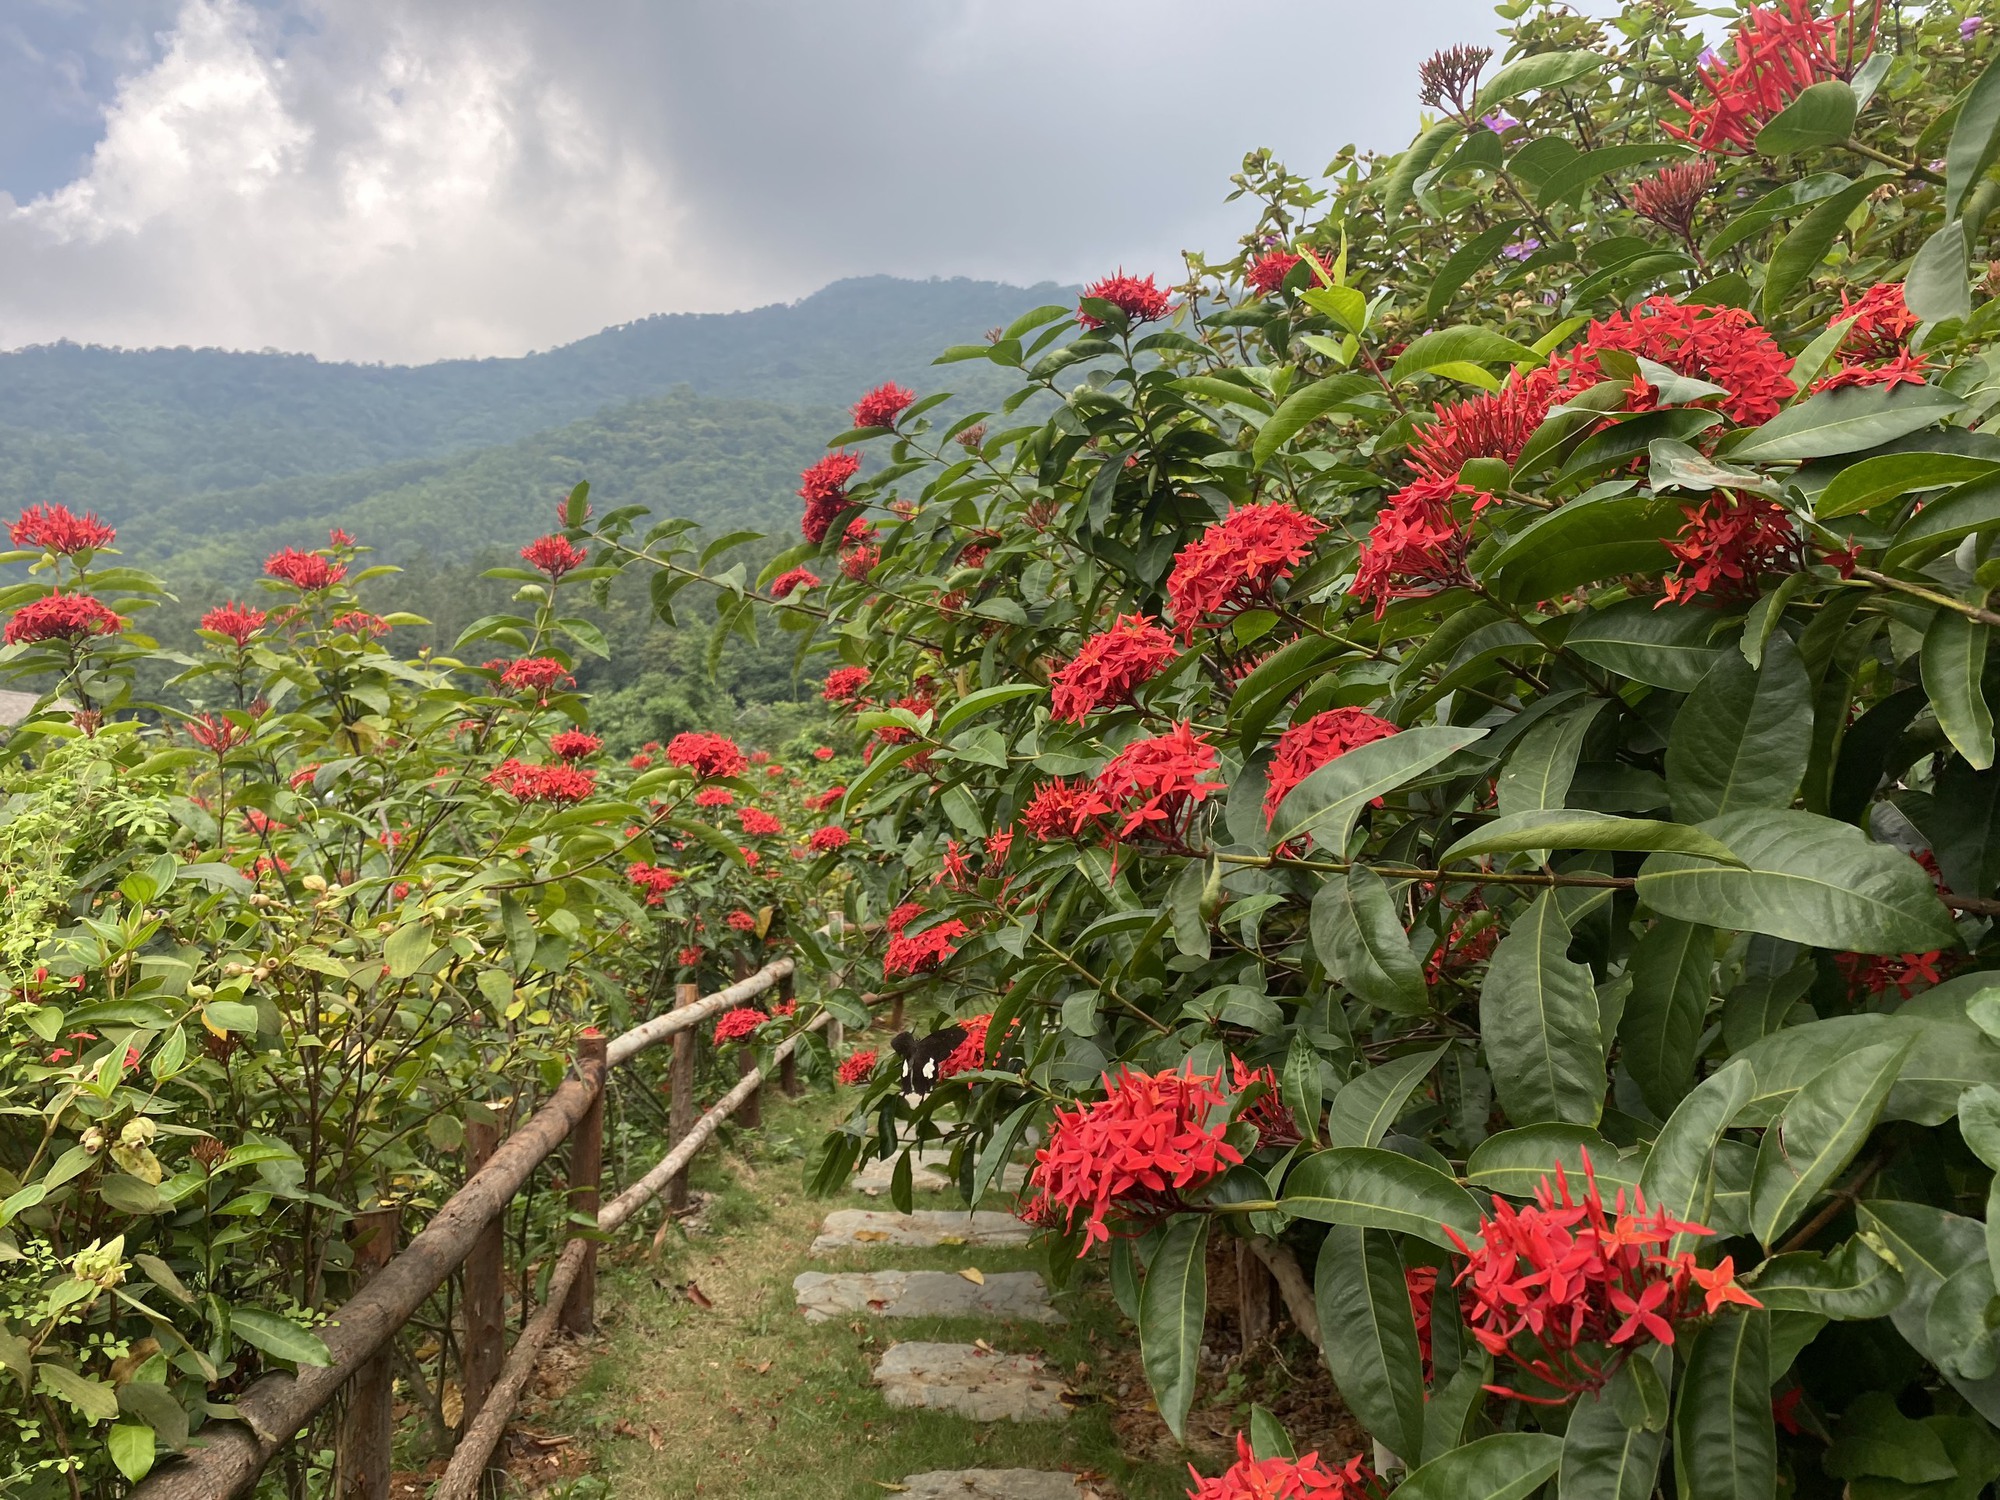 Mê đắm vườn mẫu đơn đỏ rực giữa lưng chừng đồi, chụp ảnh như tiên cảnh ở ngoại thành Hà Nội